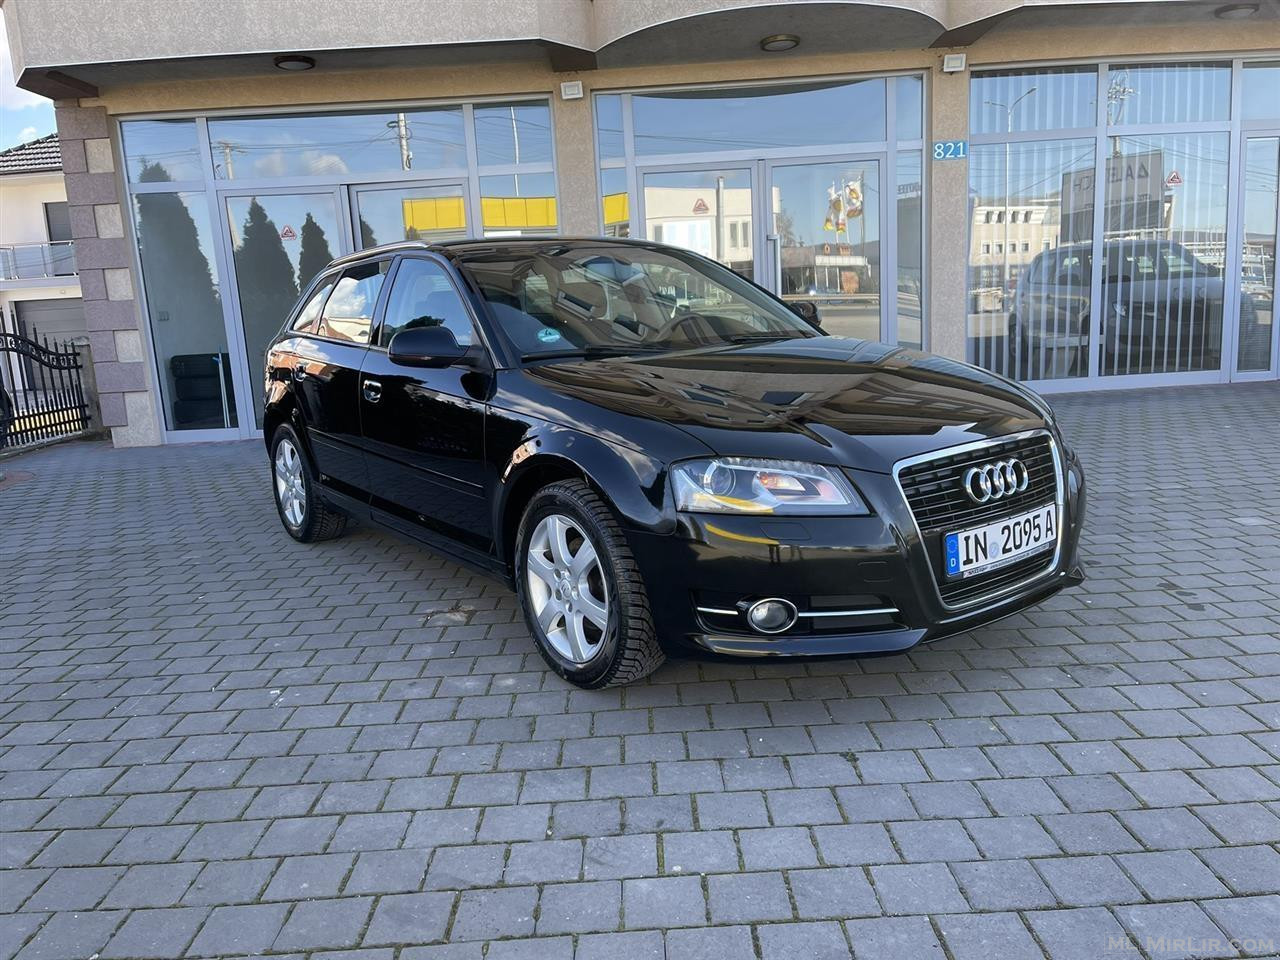 Audi a3, Pa Dogan, Viti 2013